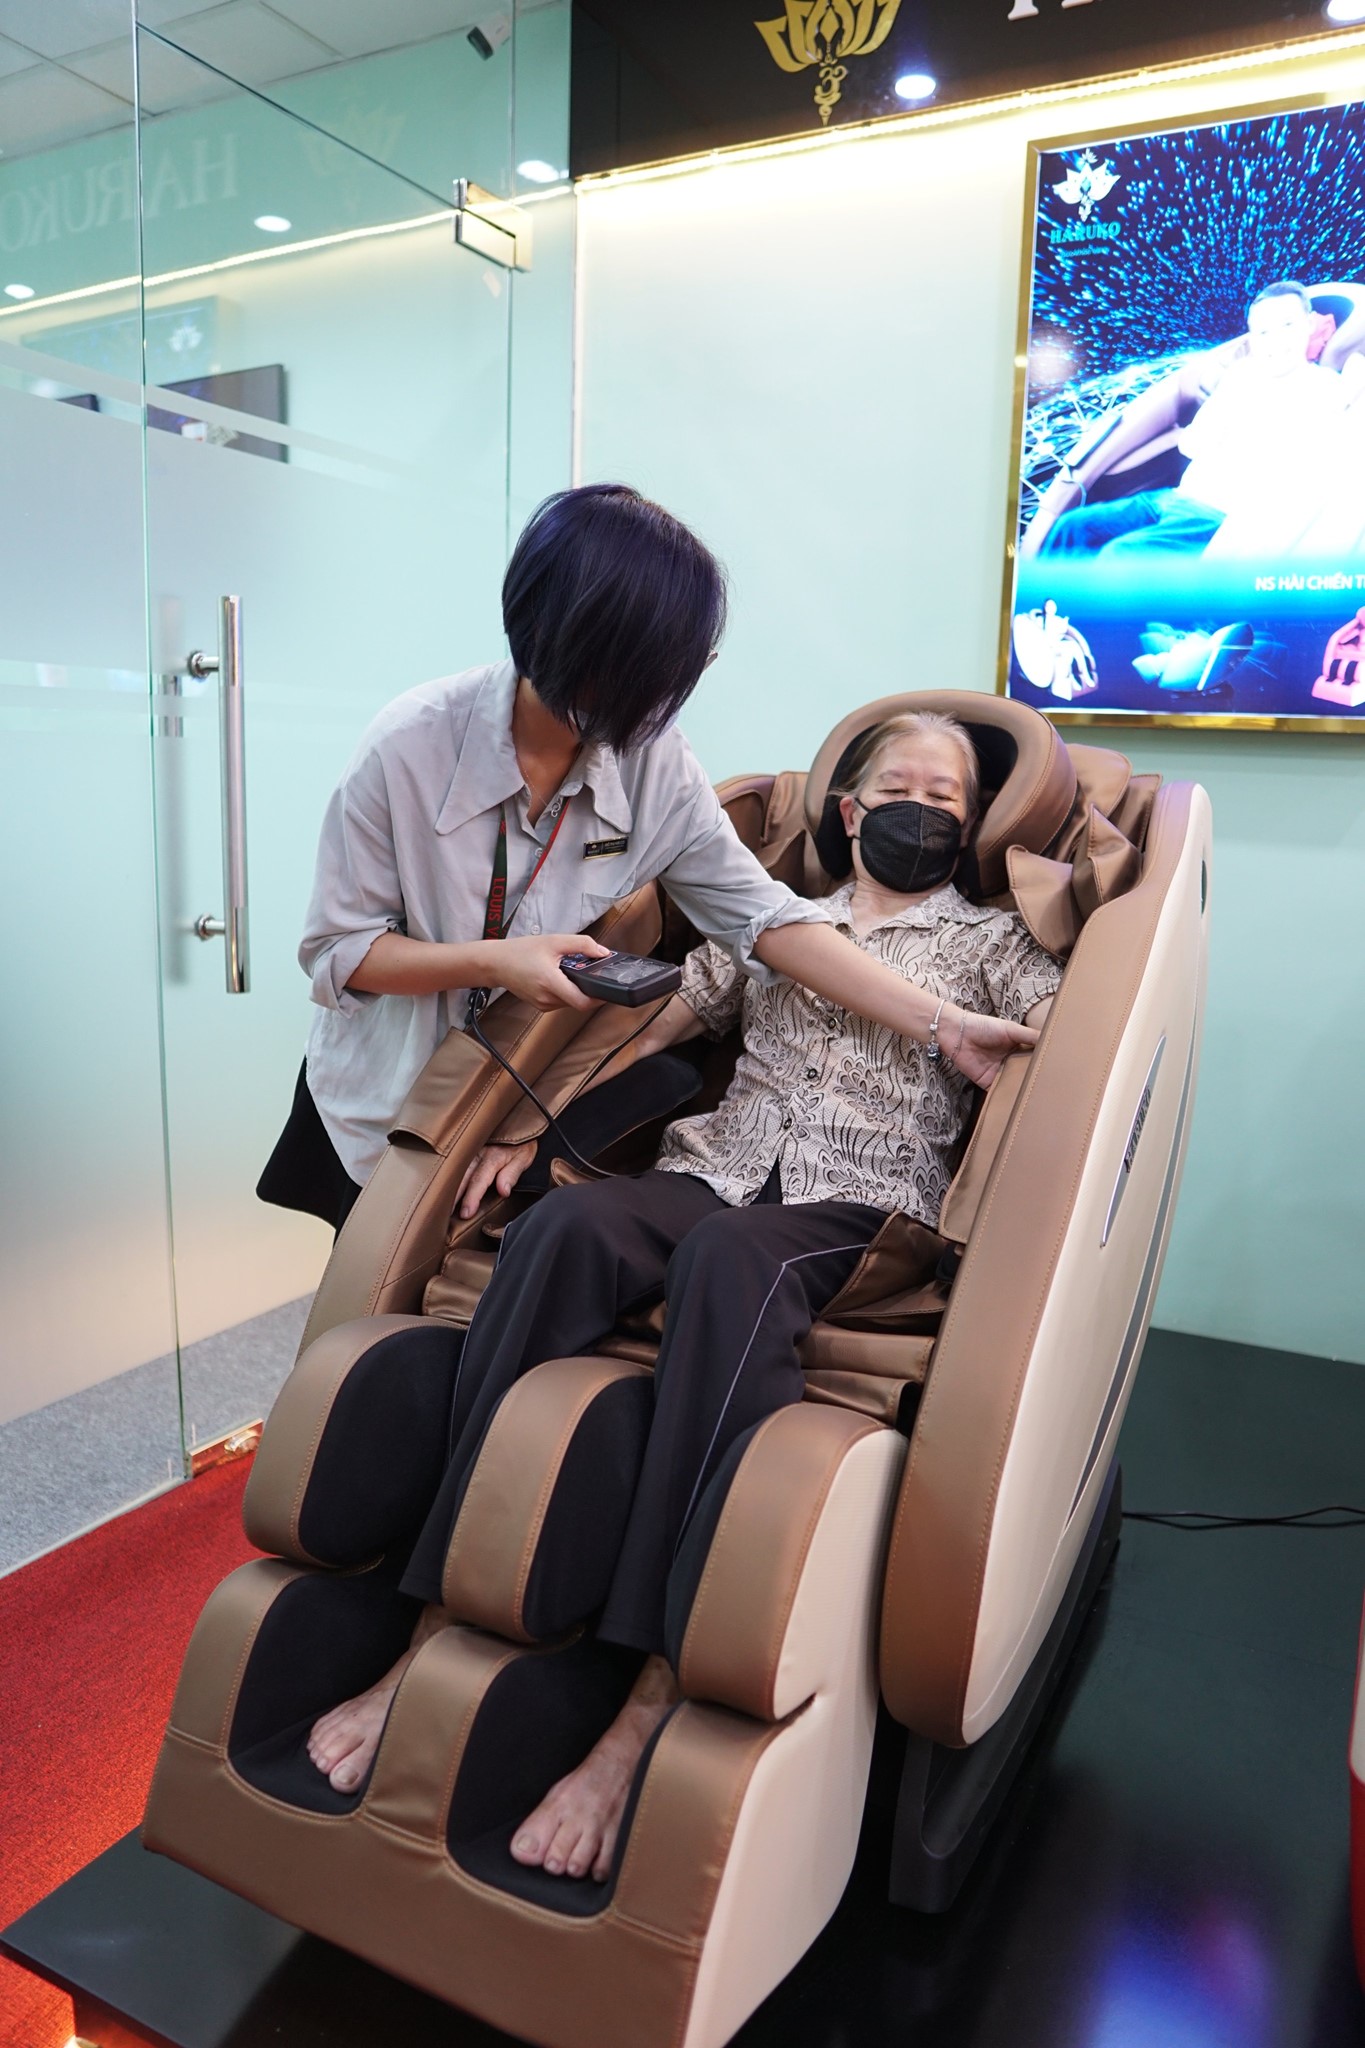 Khách hàng lần đầu trải nghiệm ghế massage Akina đều cảm thấy thoải mái và dễ chịu và có những đánh giá tích cực đối với sản phẩm